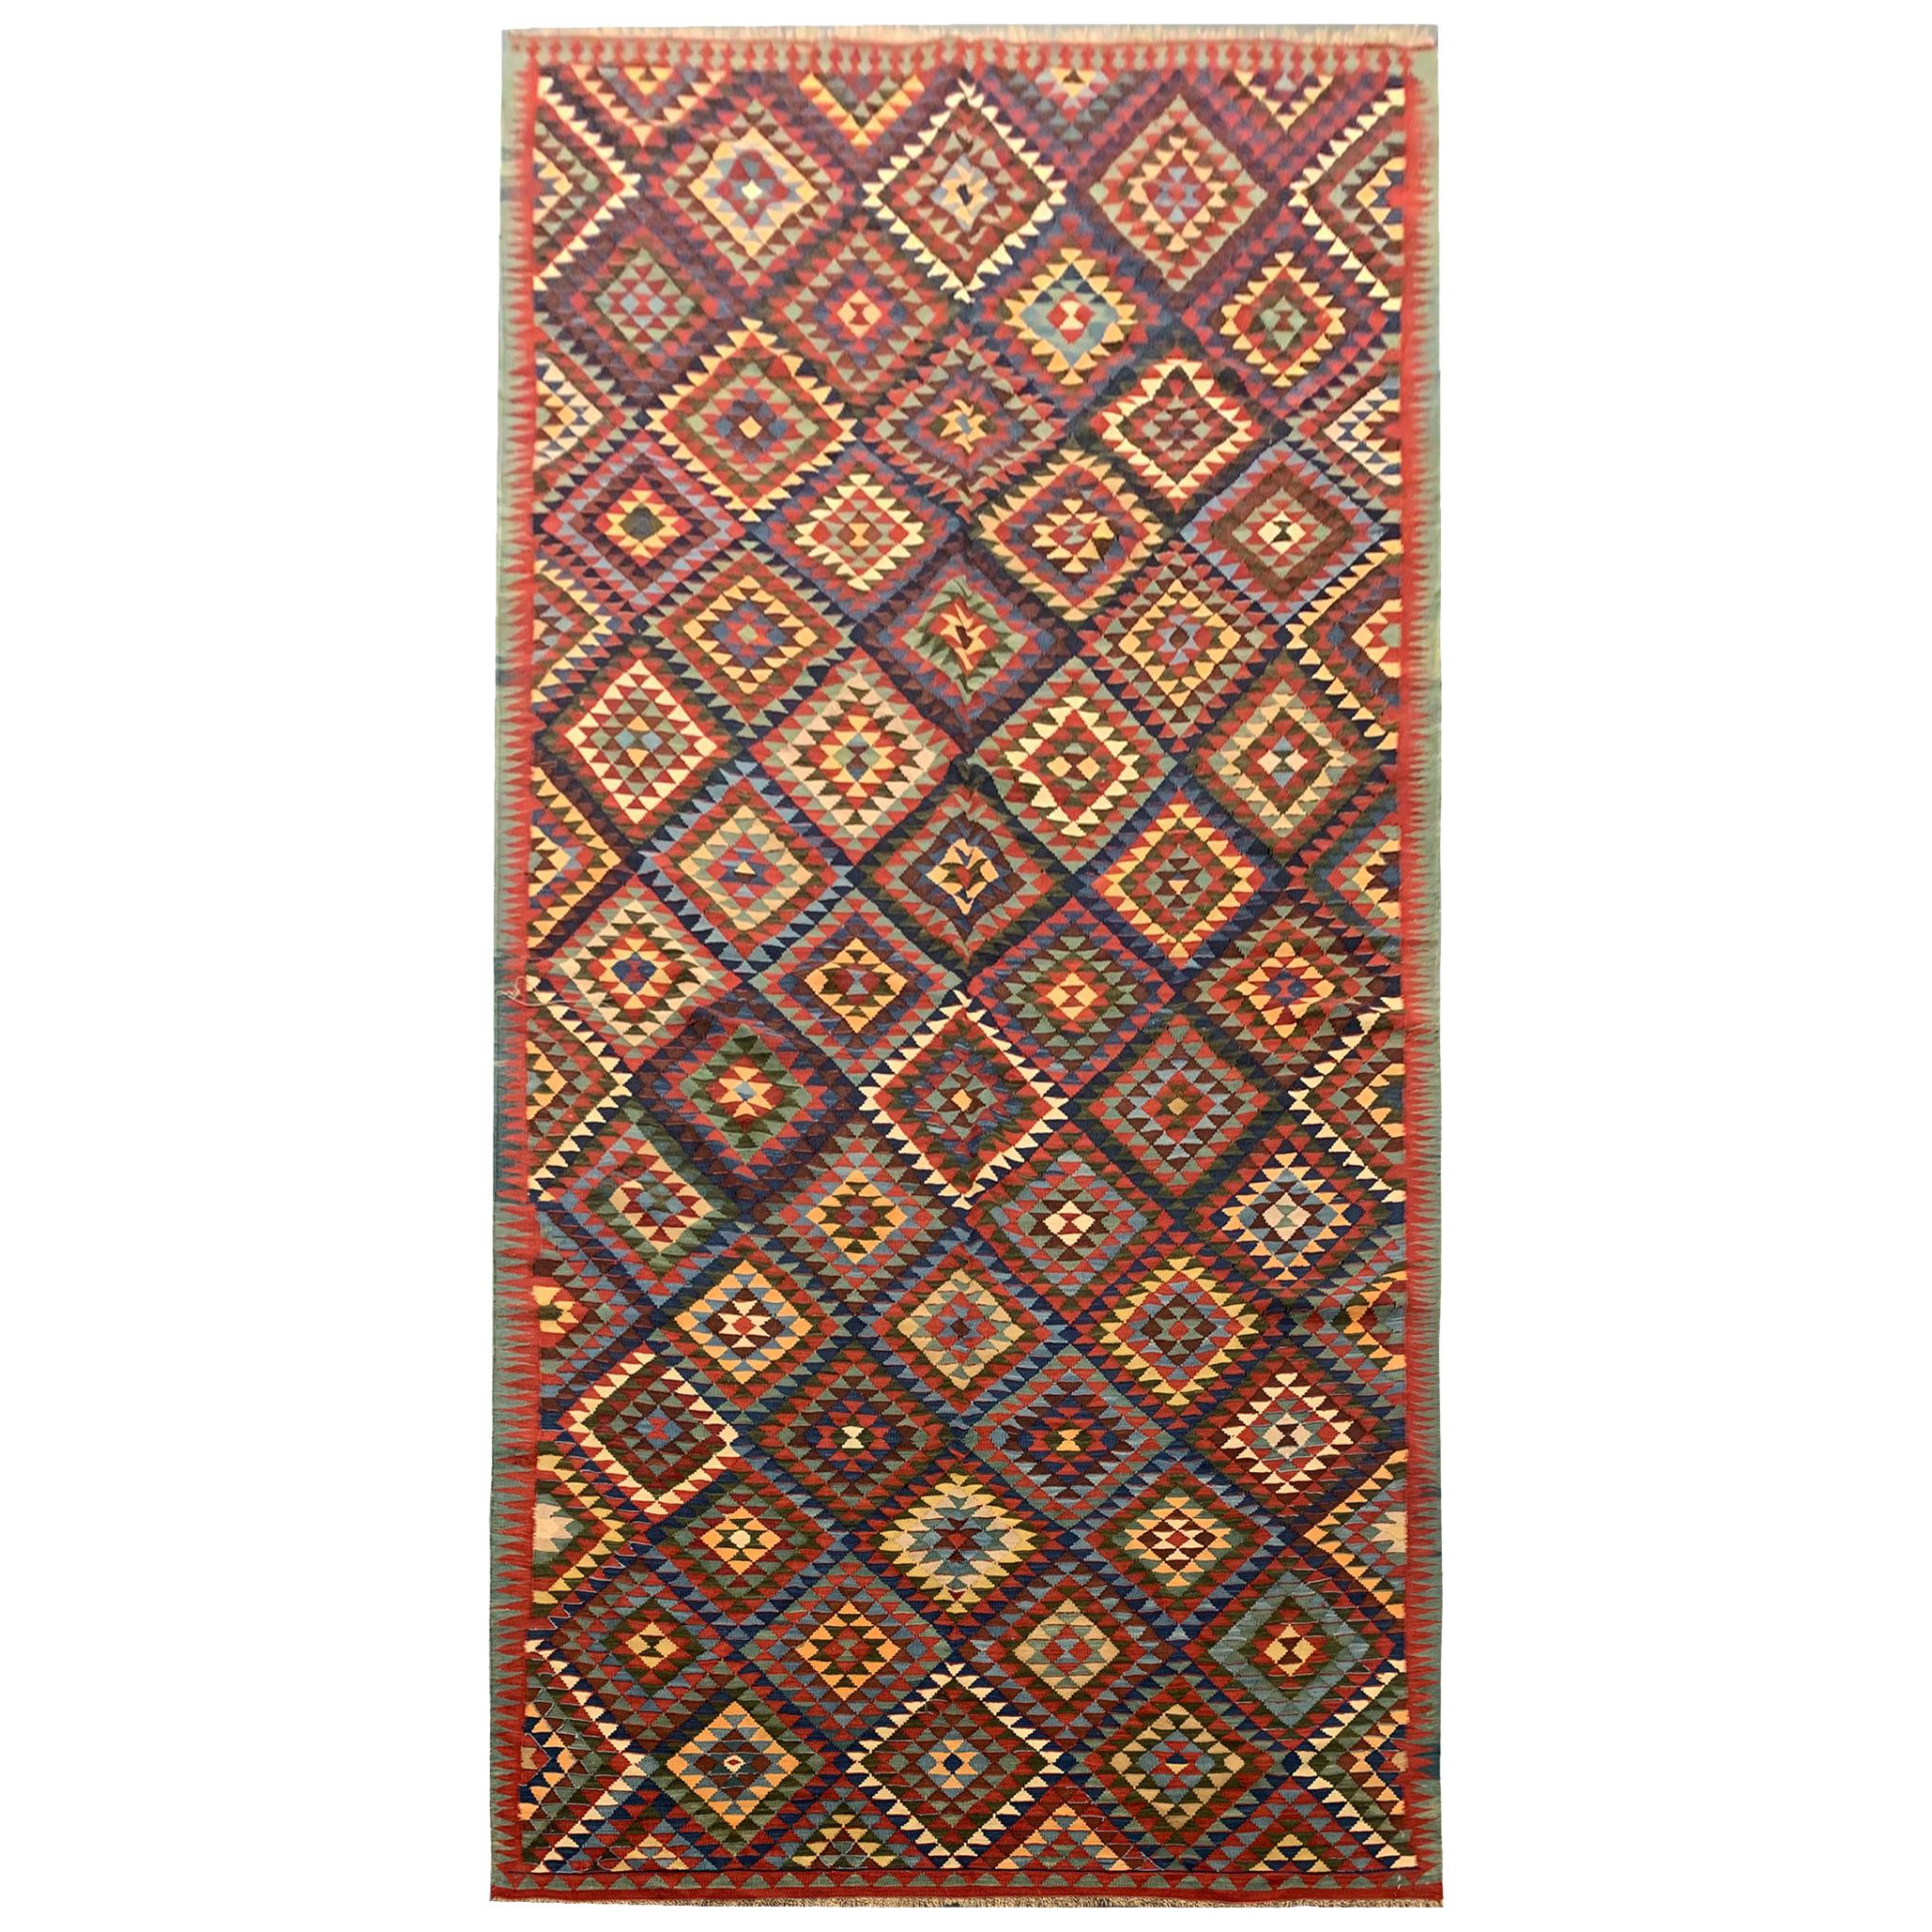 Antique Rugs Geometric Kilim Rugs Caucasian Kilims Carpet 